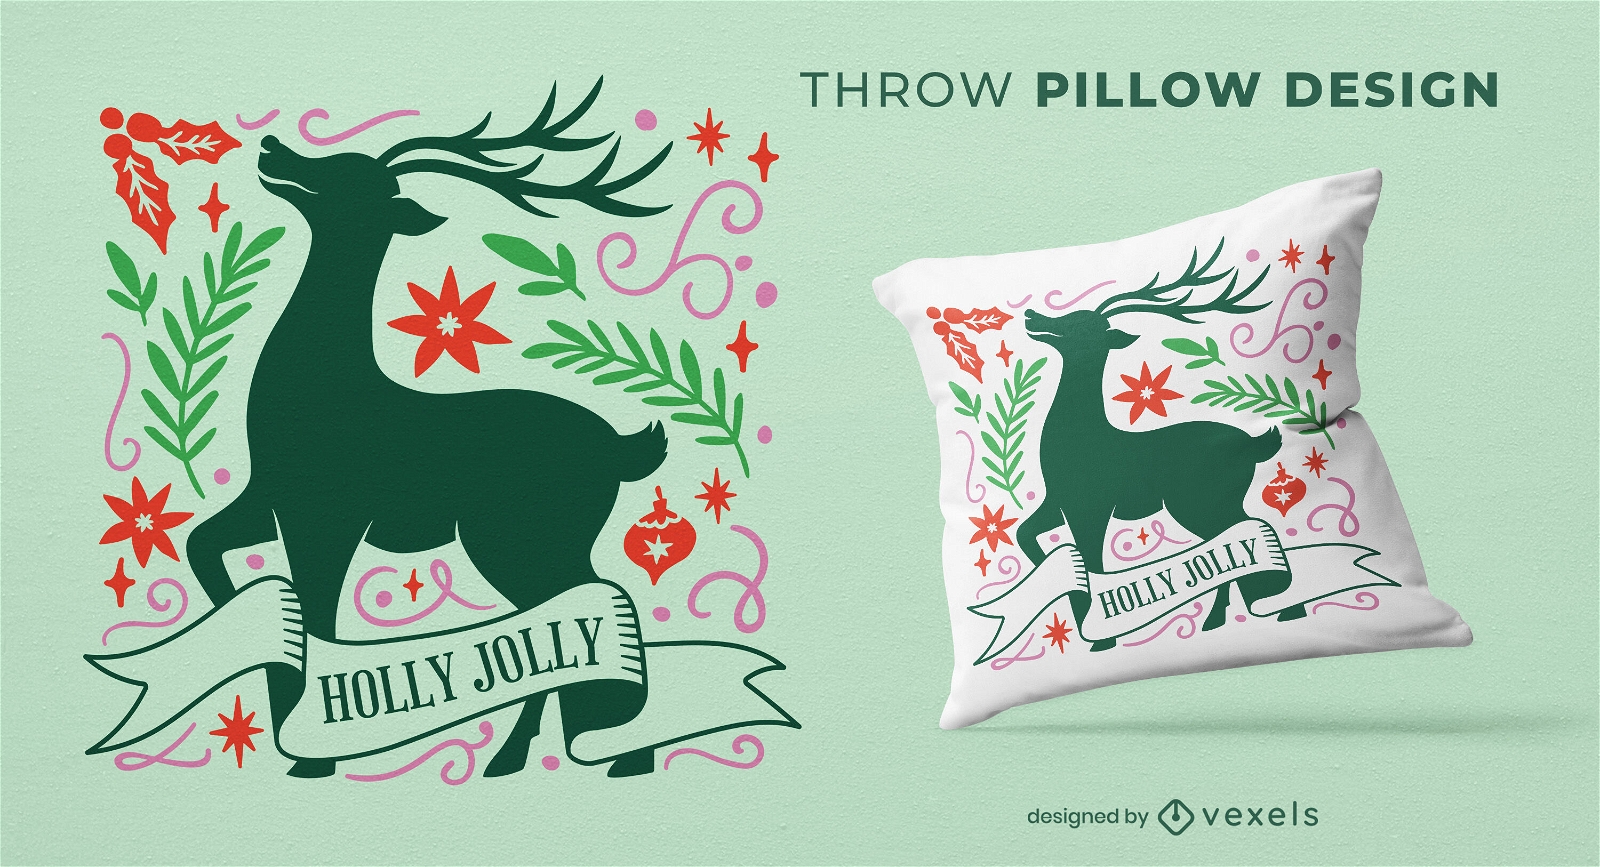 Diseño de almohada Holly Jolly Christmas.